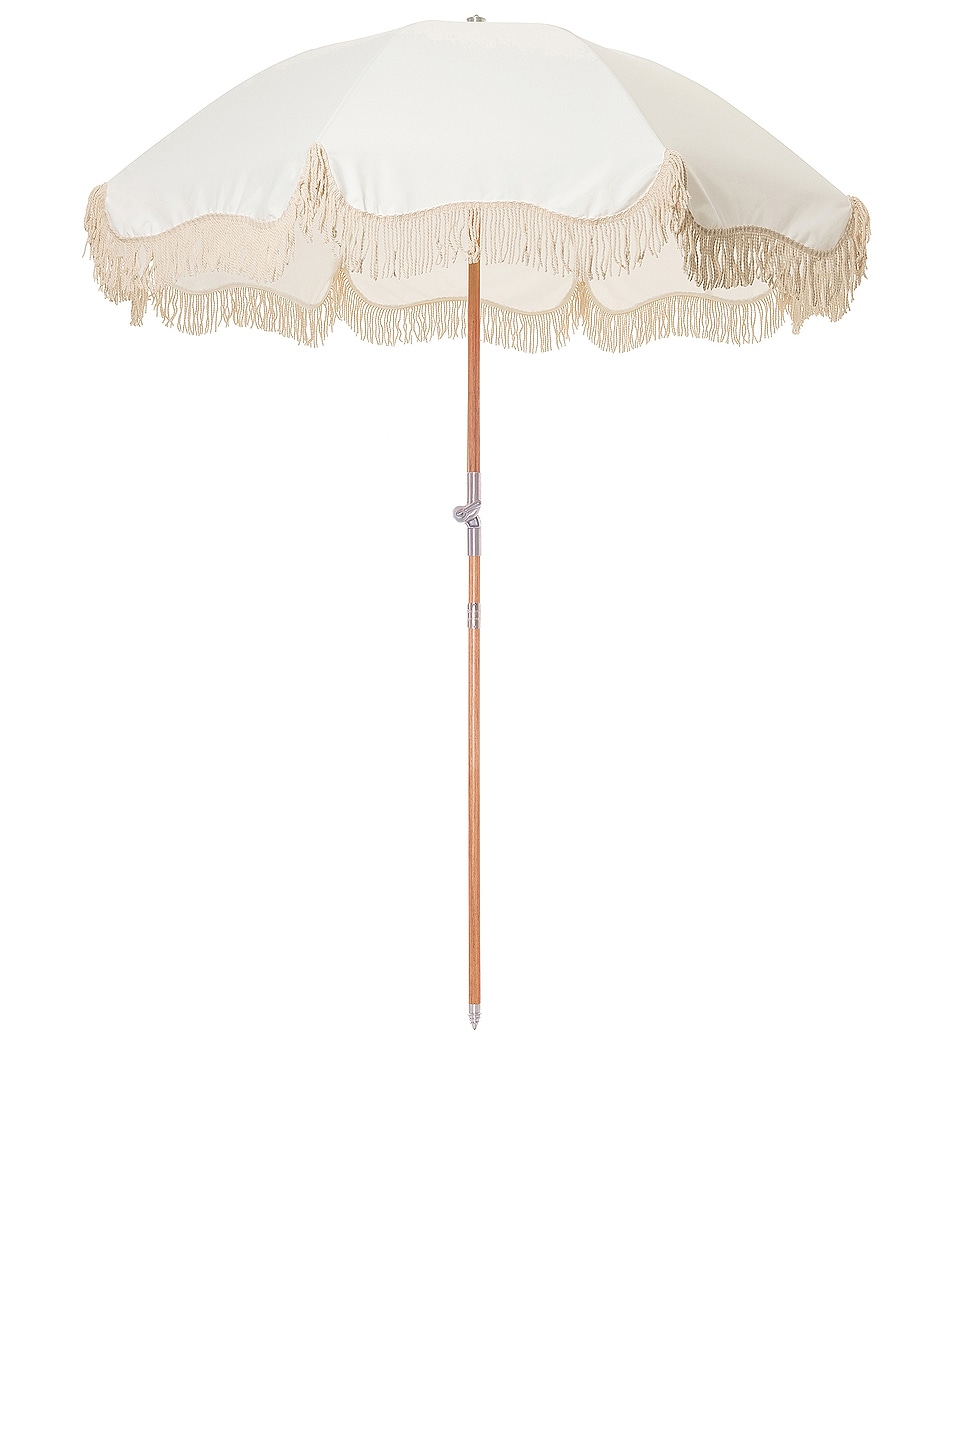 Image 1 of business & pleasure co. Premium Beach Umbrella in Antique White